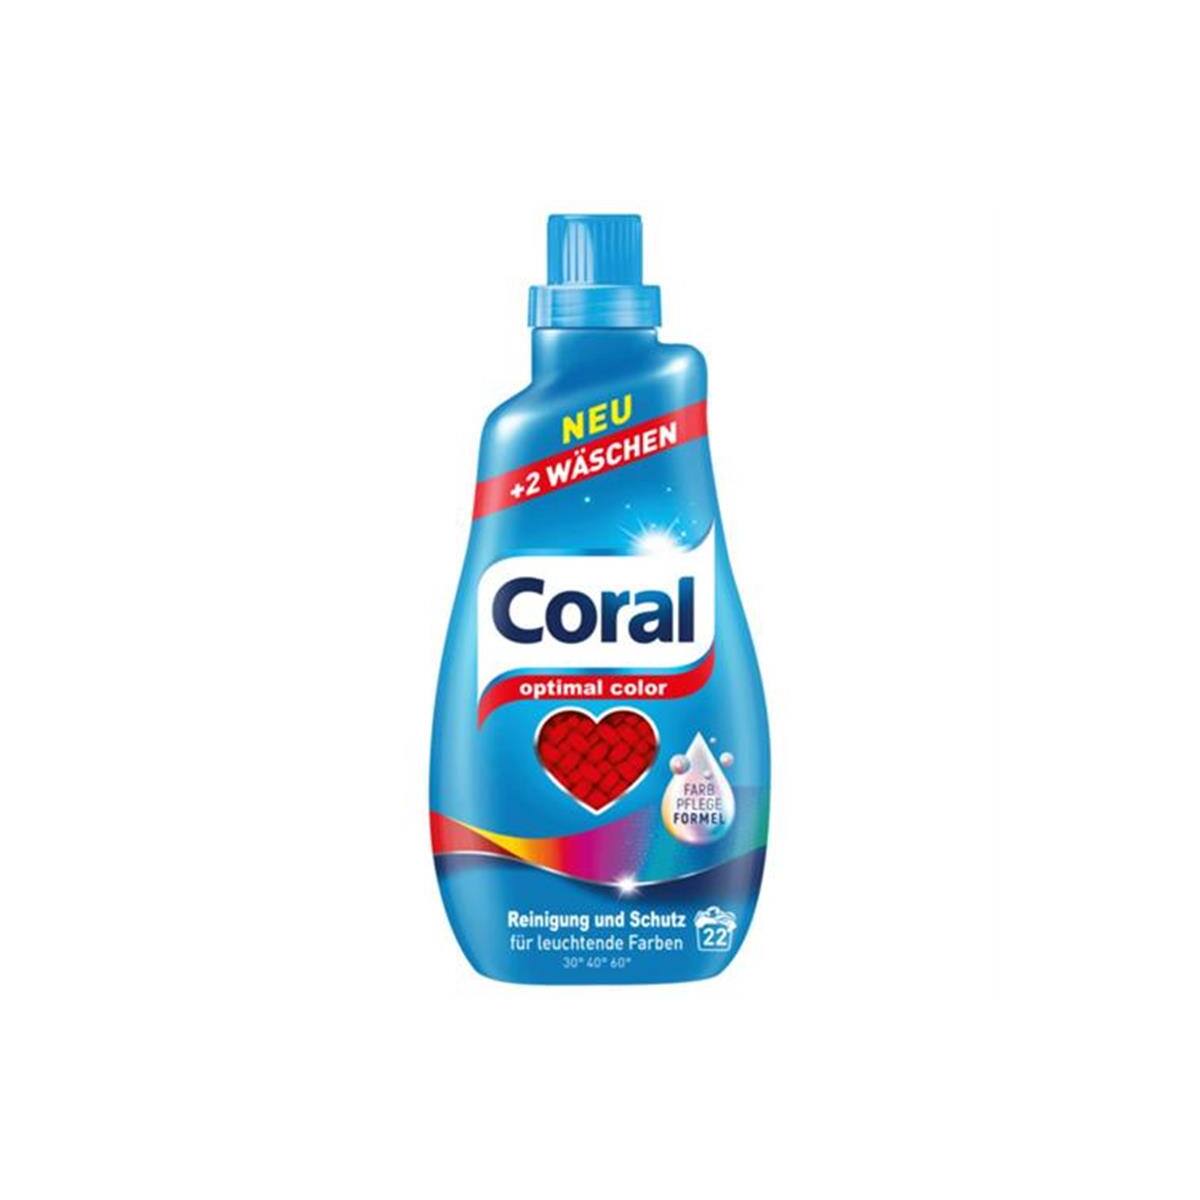 Coral Optimal Color Flssigwaschmittel 1,1 L 22 WL